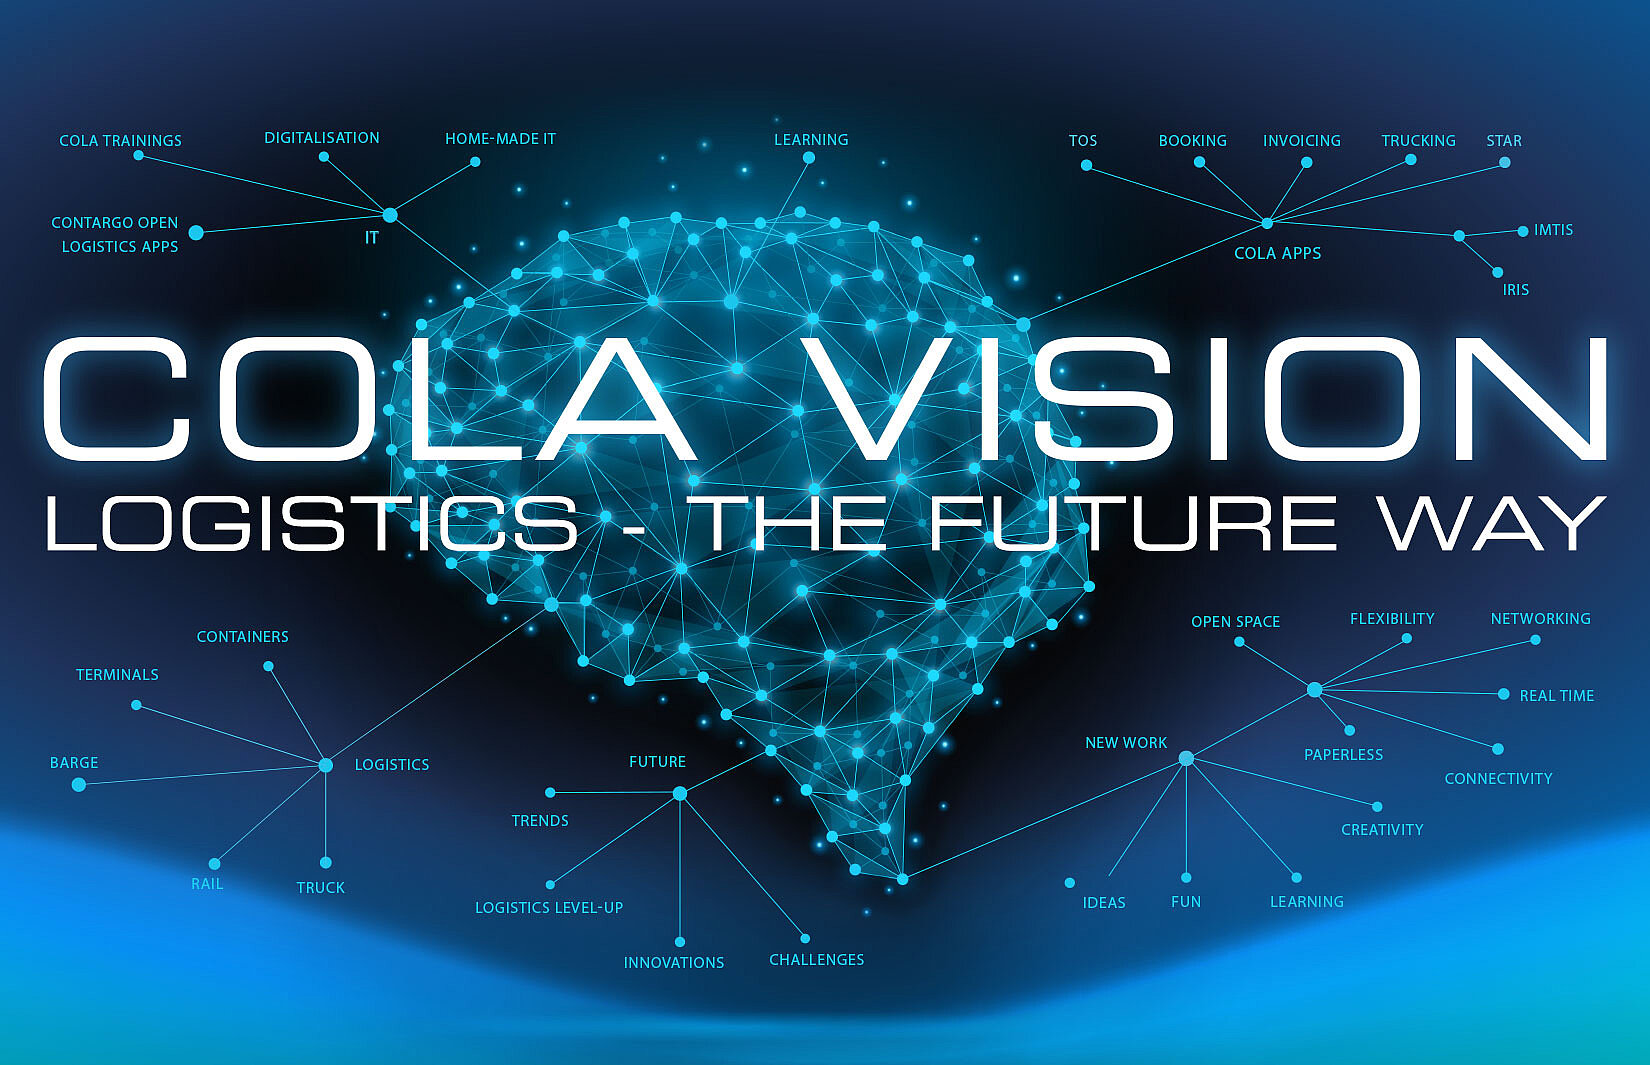 Grafik Cola mit digitaler Wolke und Schriftzug "COLA VISION"